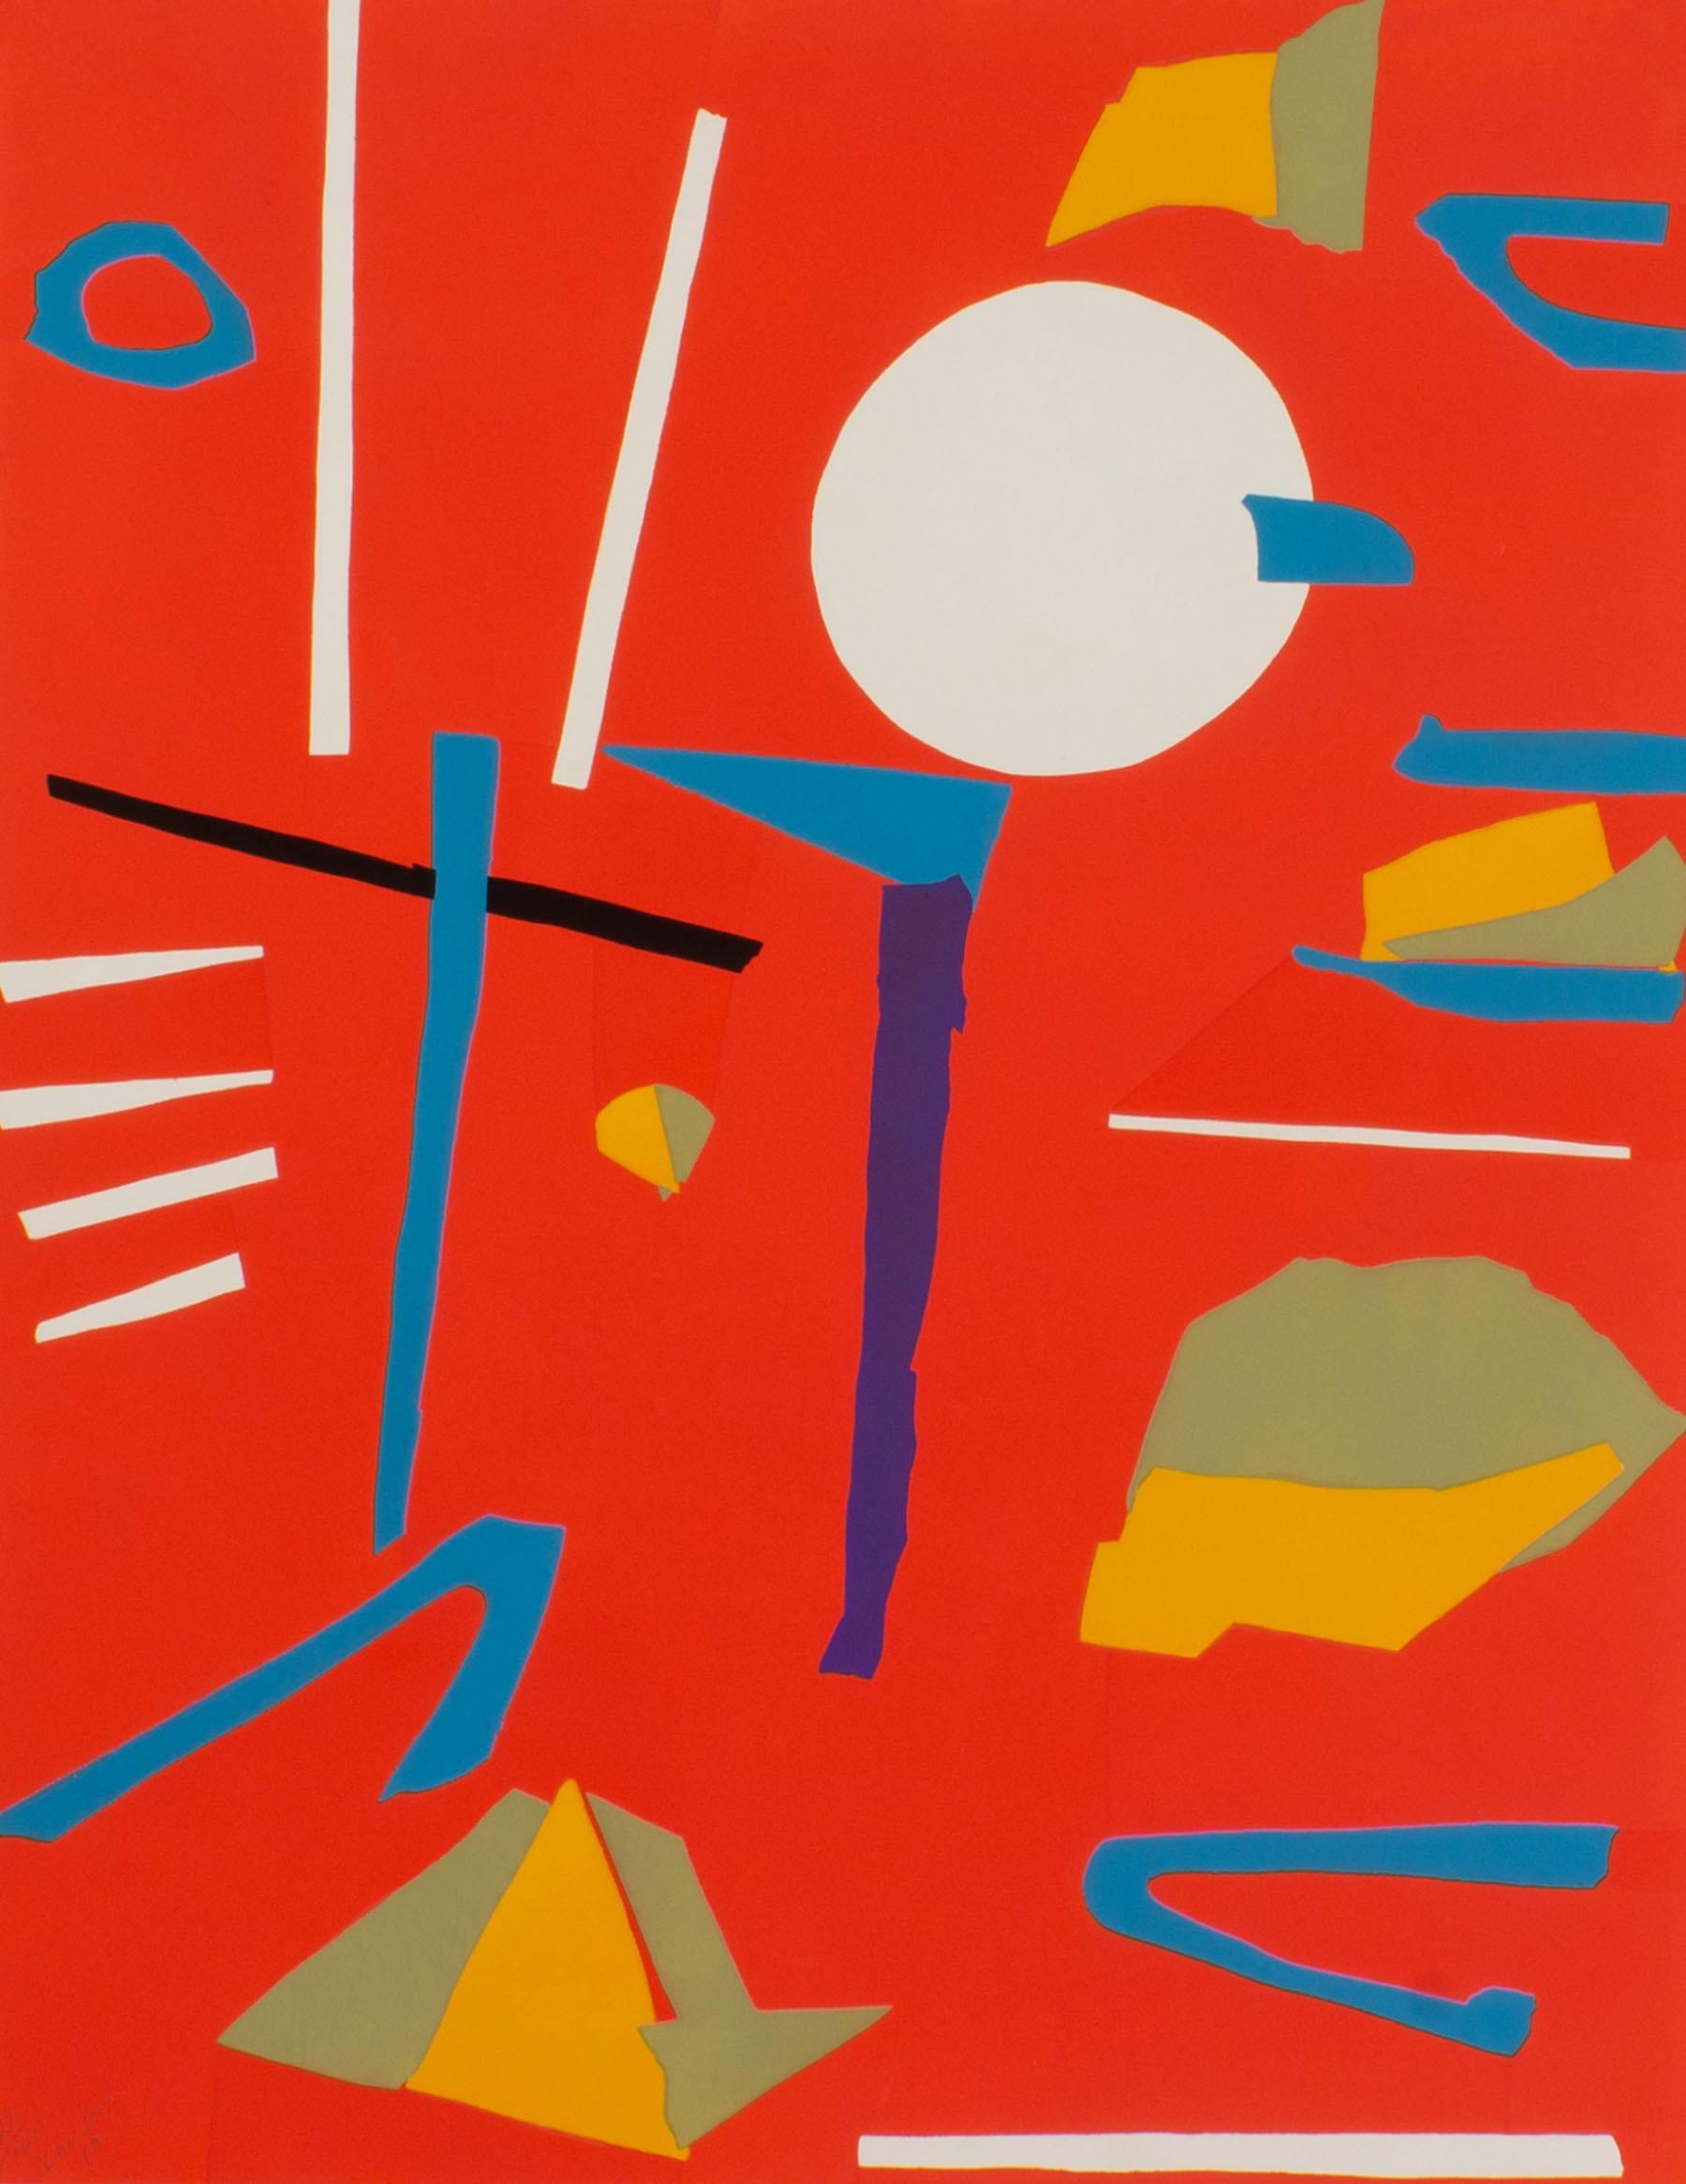 Sérigraphie abstraite à tirage limité de 1969 de l'artiste russe Andre Lanskoy (1902-1976). Signée en bas à gauche, cette pièce vibrante représente une composition remplie d'objets abstraits colorés flottant sur un fond rouge vif. La sérigraphie est